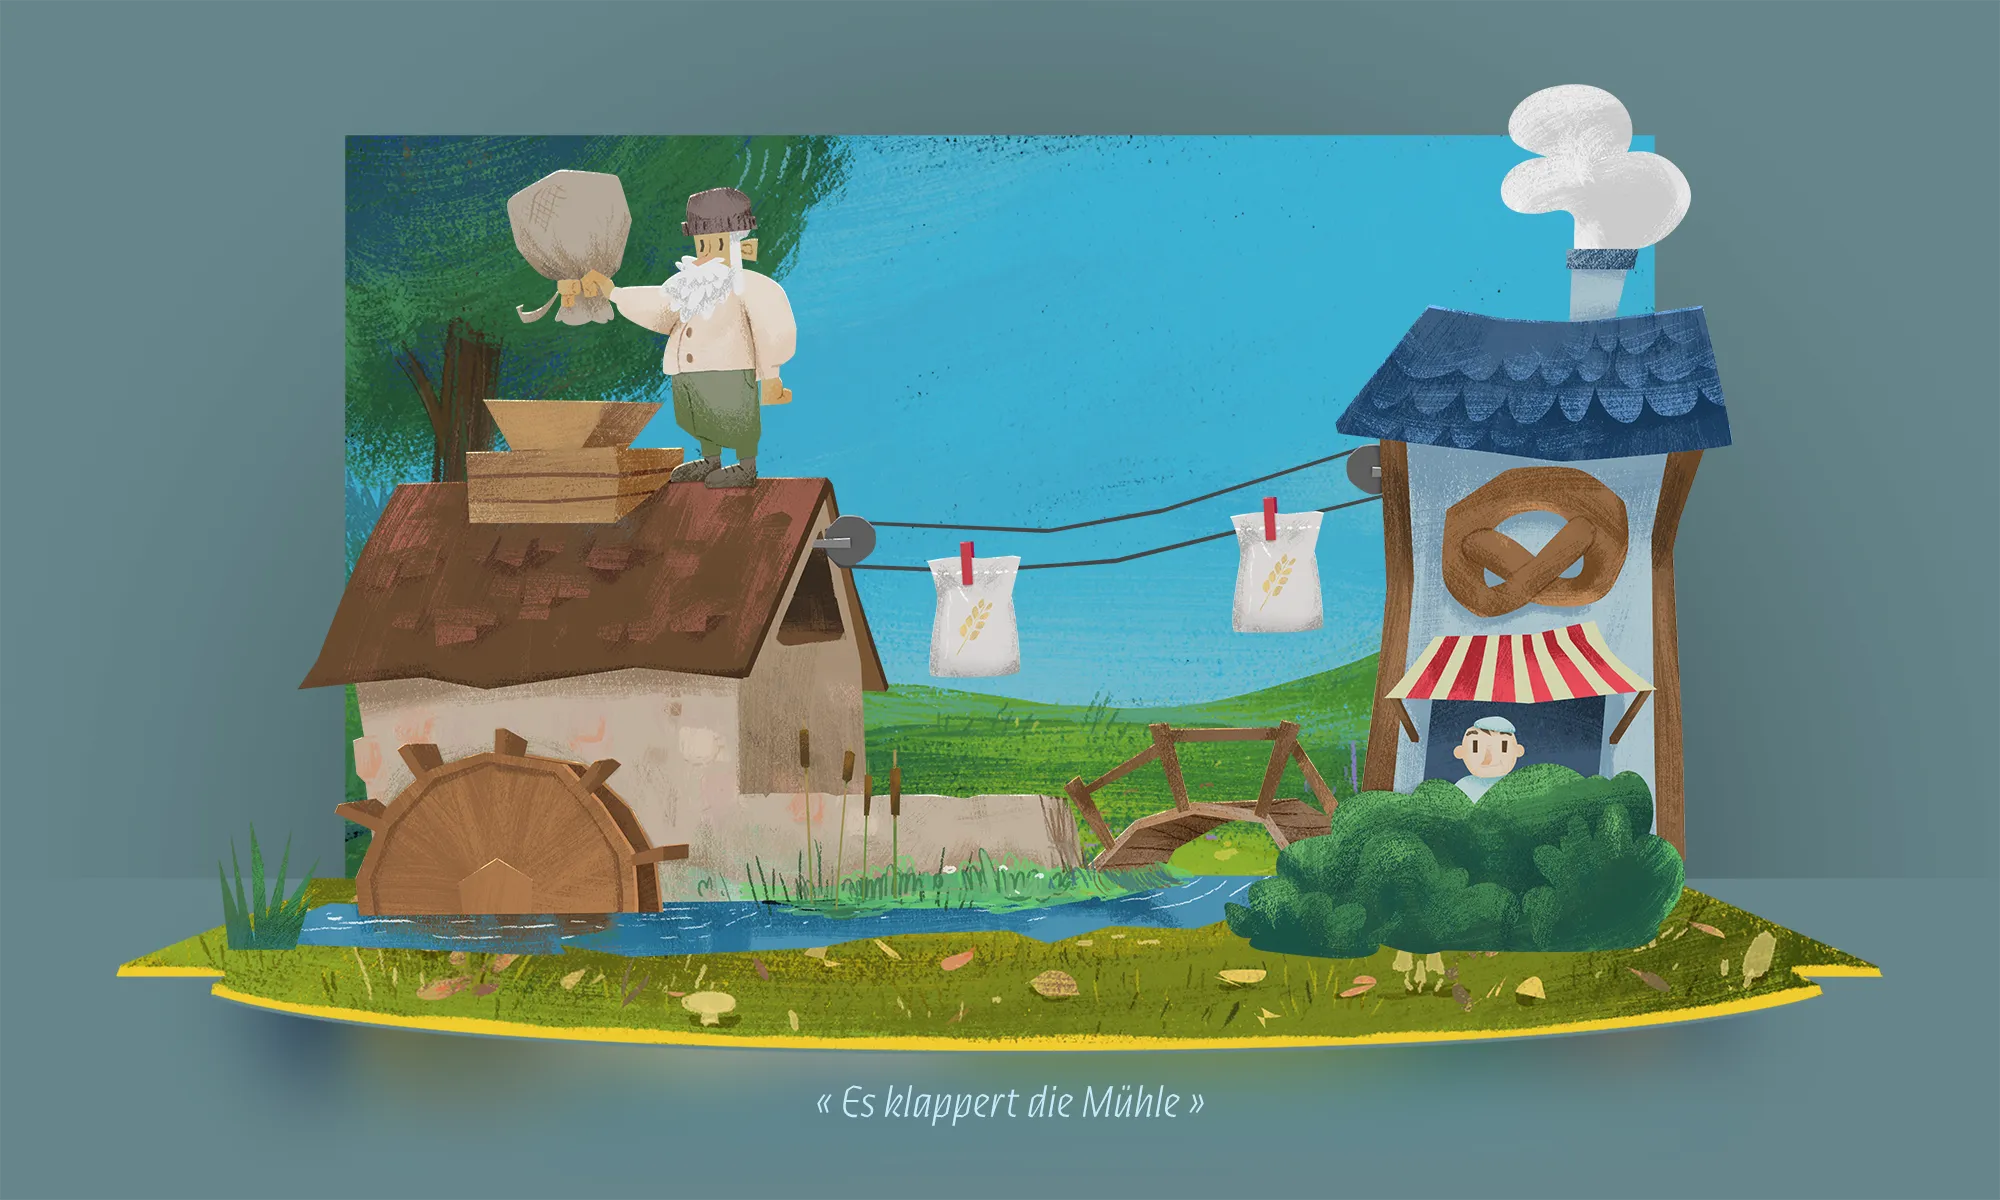 guiDo App - Illustration de la chanson 'Es klappert die Mühle'